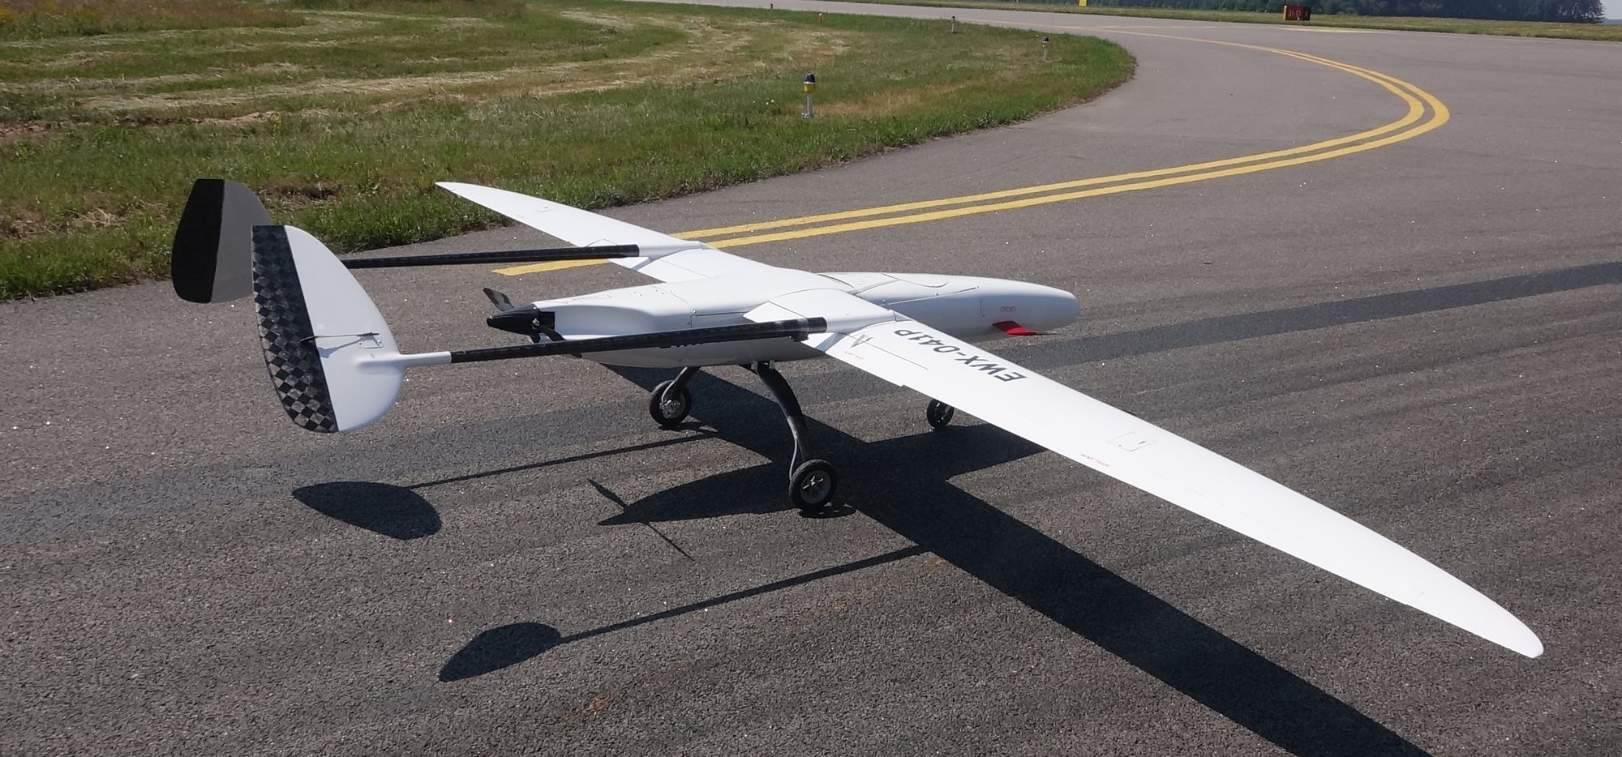 Uavos réalise des essais en vol avec son drone Sitaria